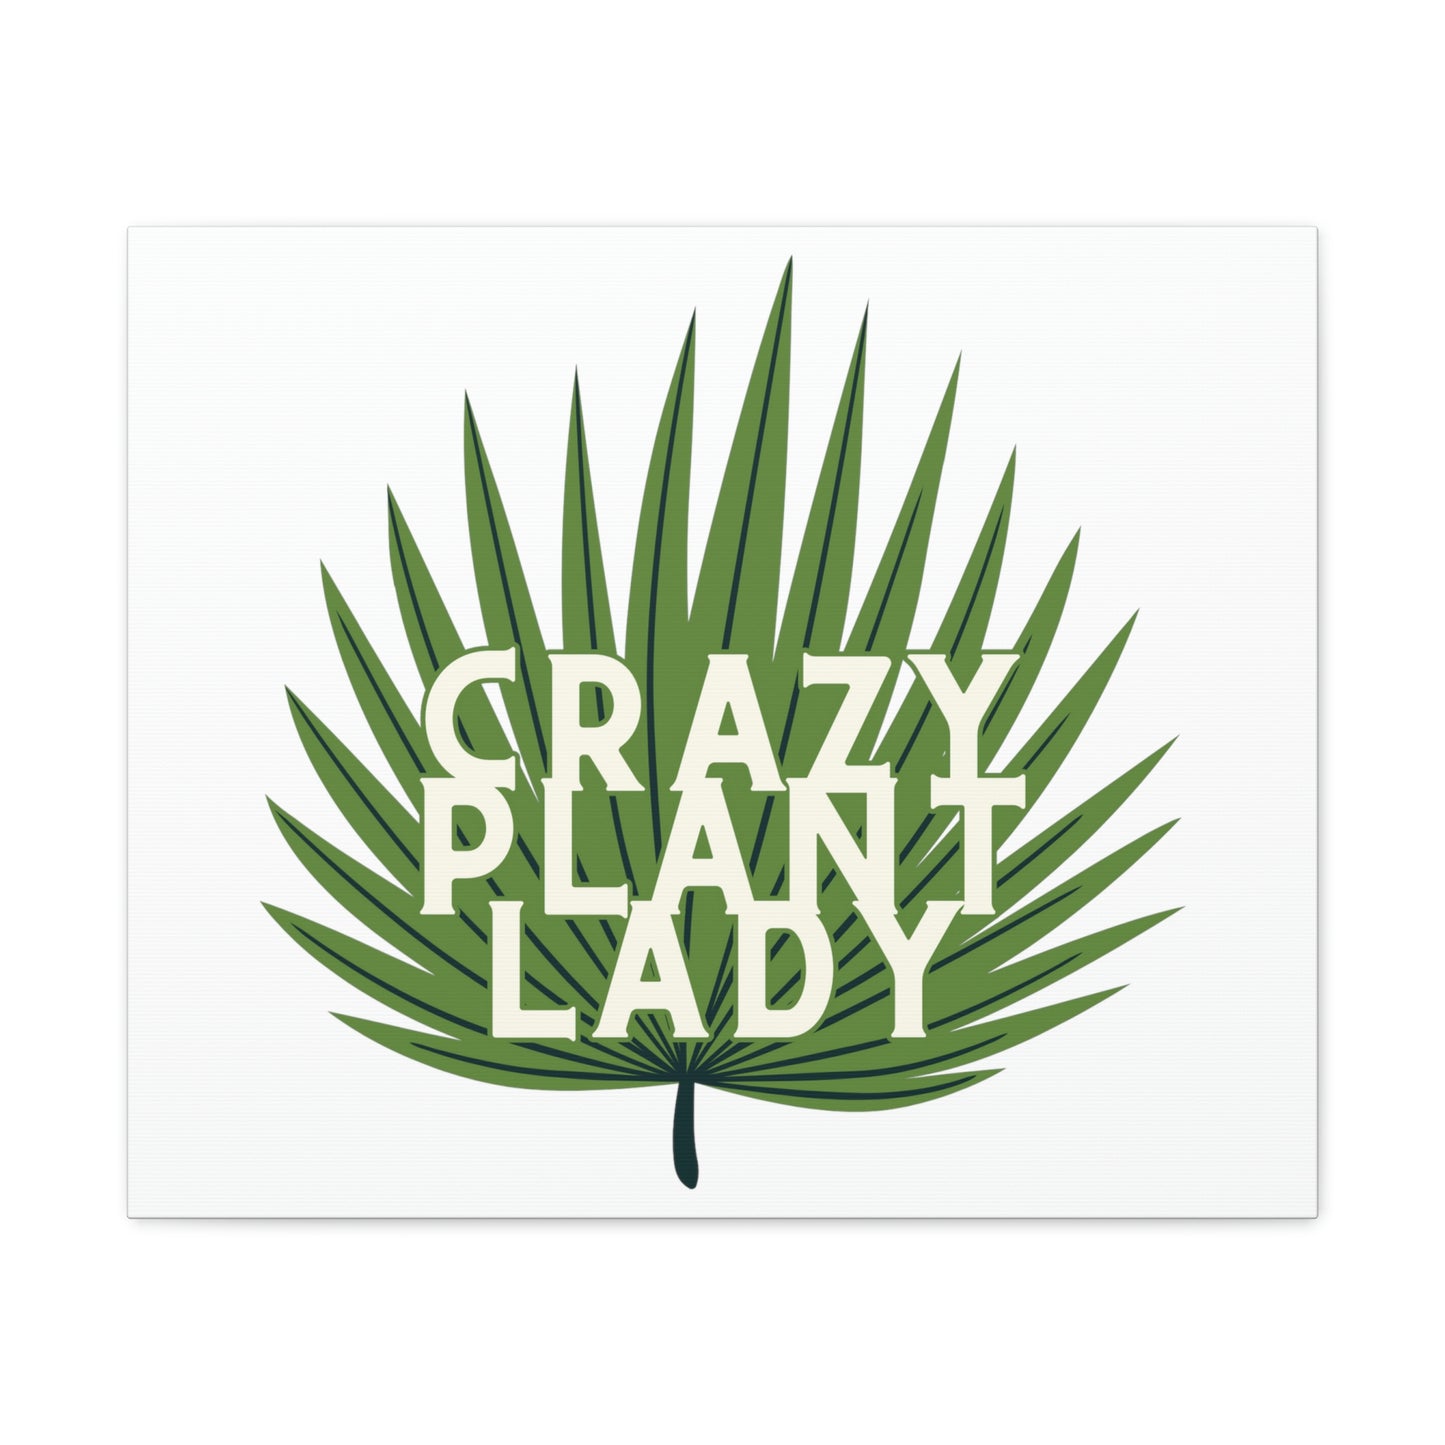 Crazy Plant Lady Canvas Wraps